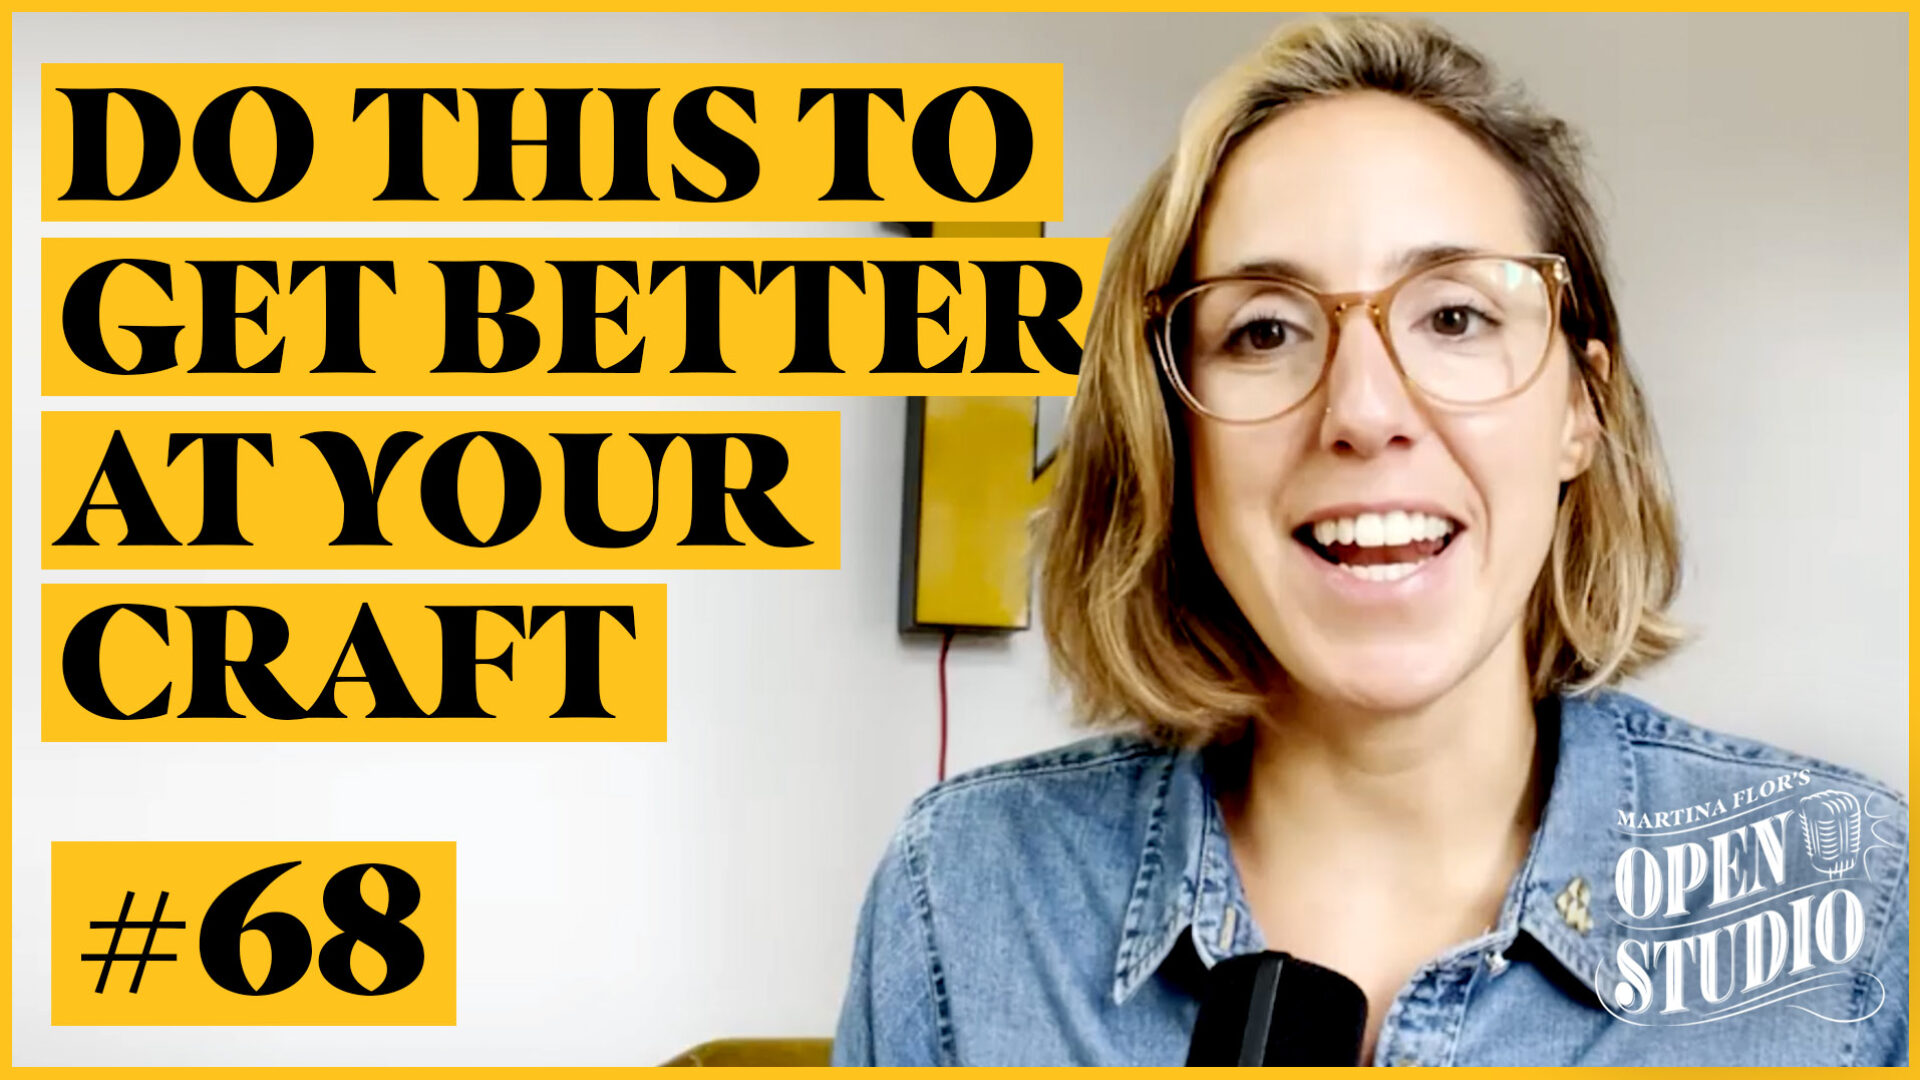 68. Martina Flor: How To Get Better At Your Craft & Build A Portfolio